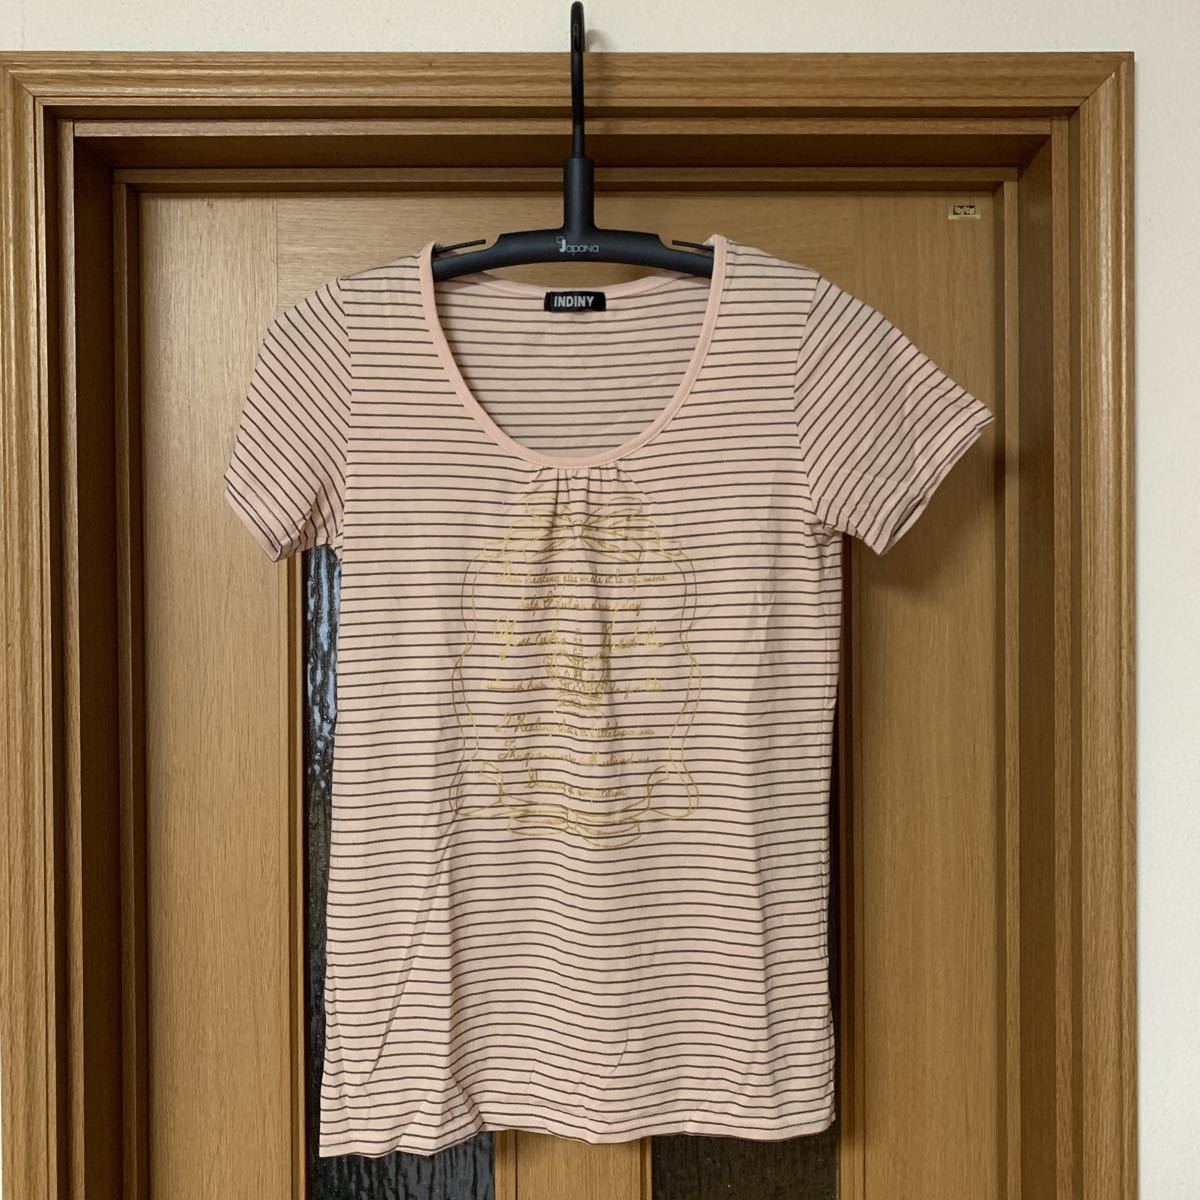 INDINY トップス Tシャツ ピンクとブラウンボーダー サイズ商品説明を参照願います 中古品 美品 1シーズン使用品 送料無料_画像1